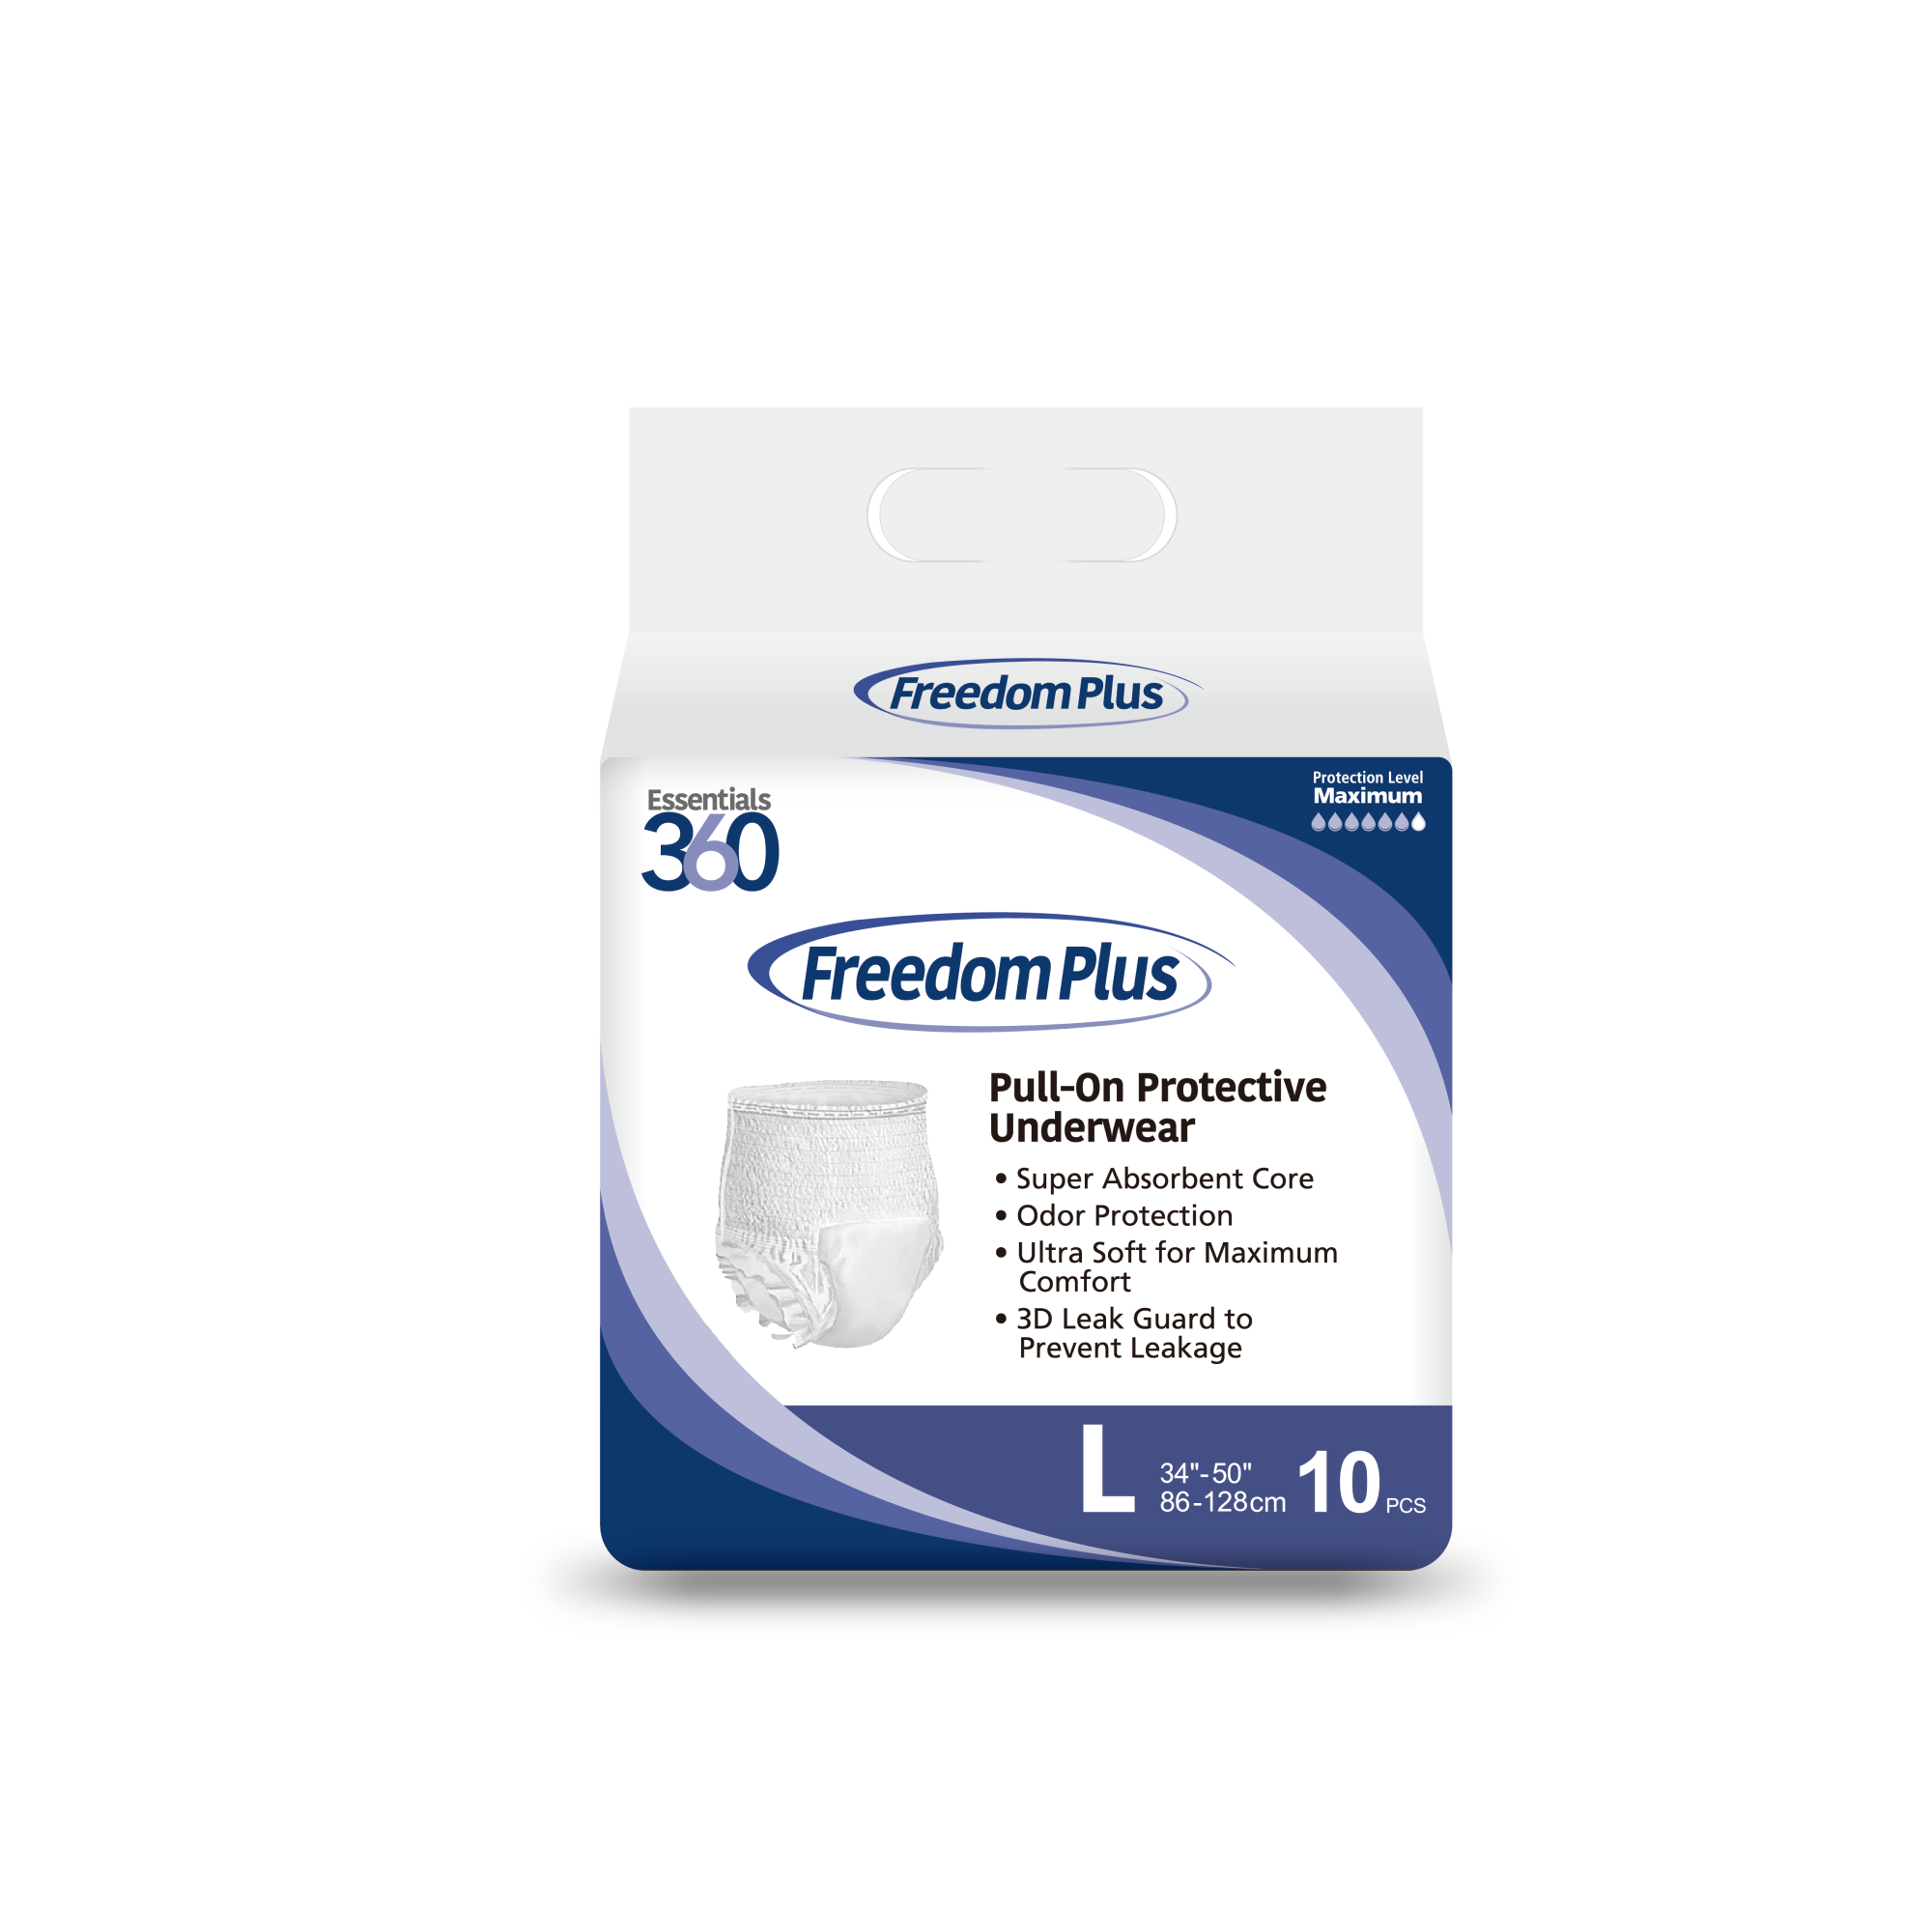 Freedom Plus Anytime Underwear - Essential 360 – Essentials 360